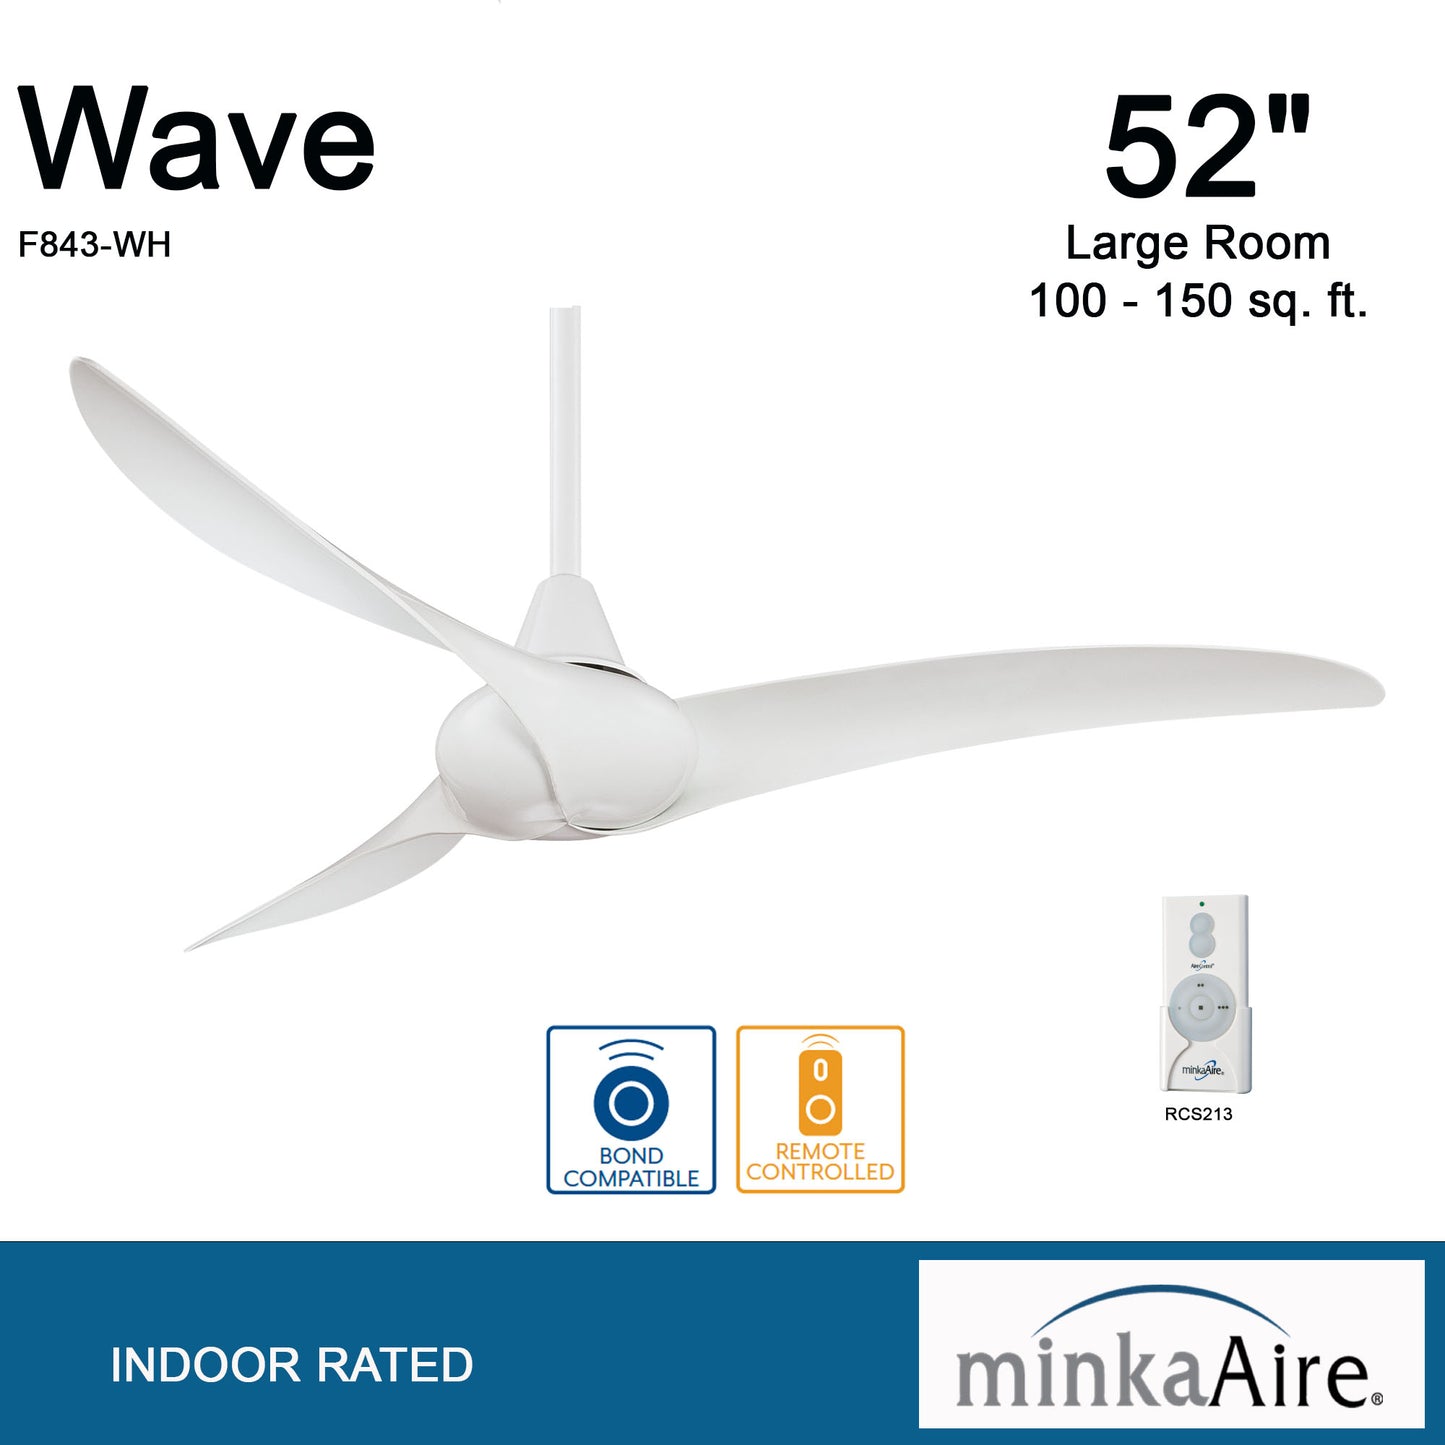 Minka Aire Wave シーリングファン【F843-WH】